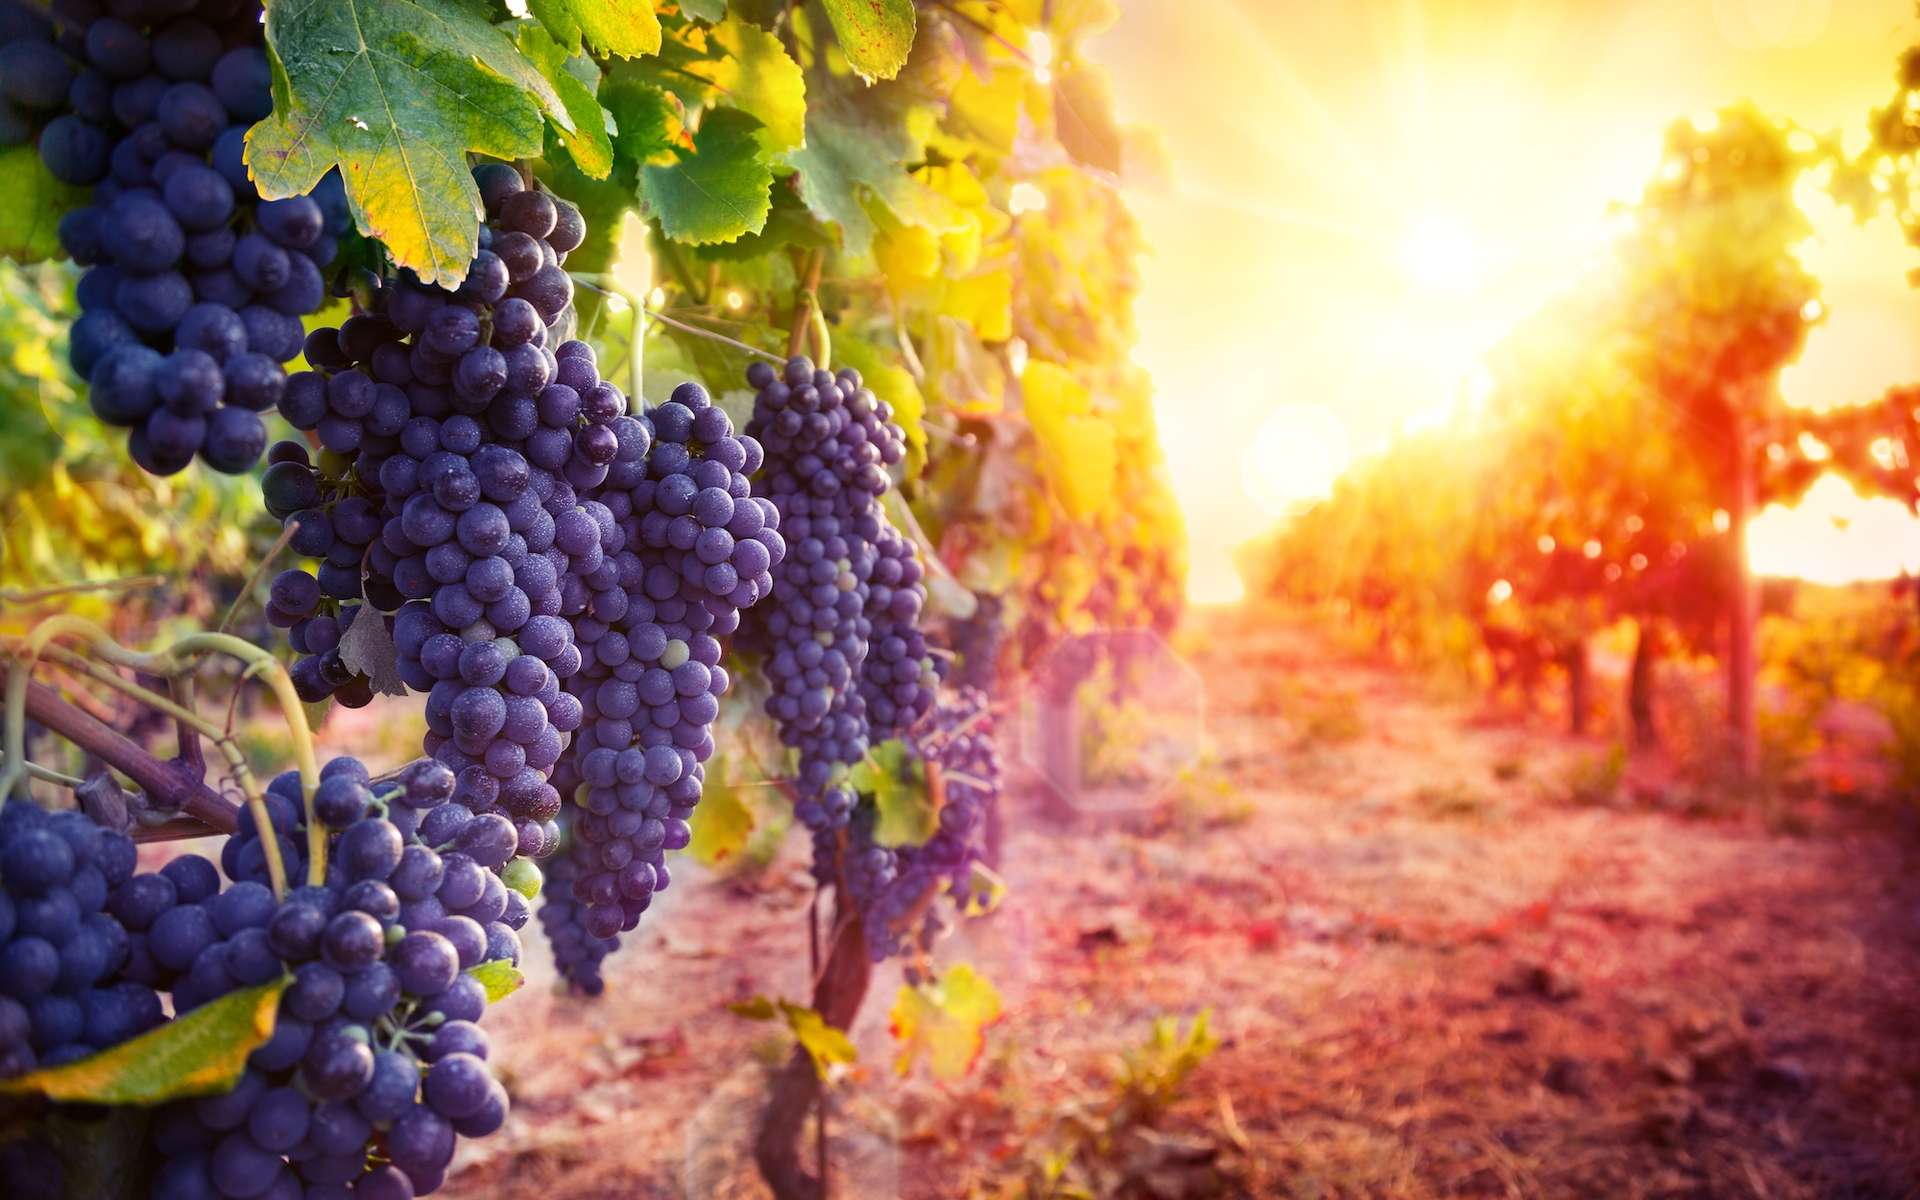 Avec le réchauffement climatique, le vin sera-t-il meilleur ?